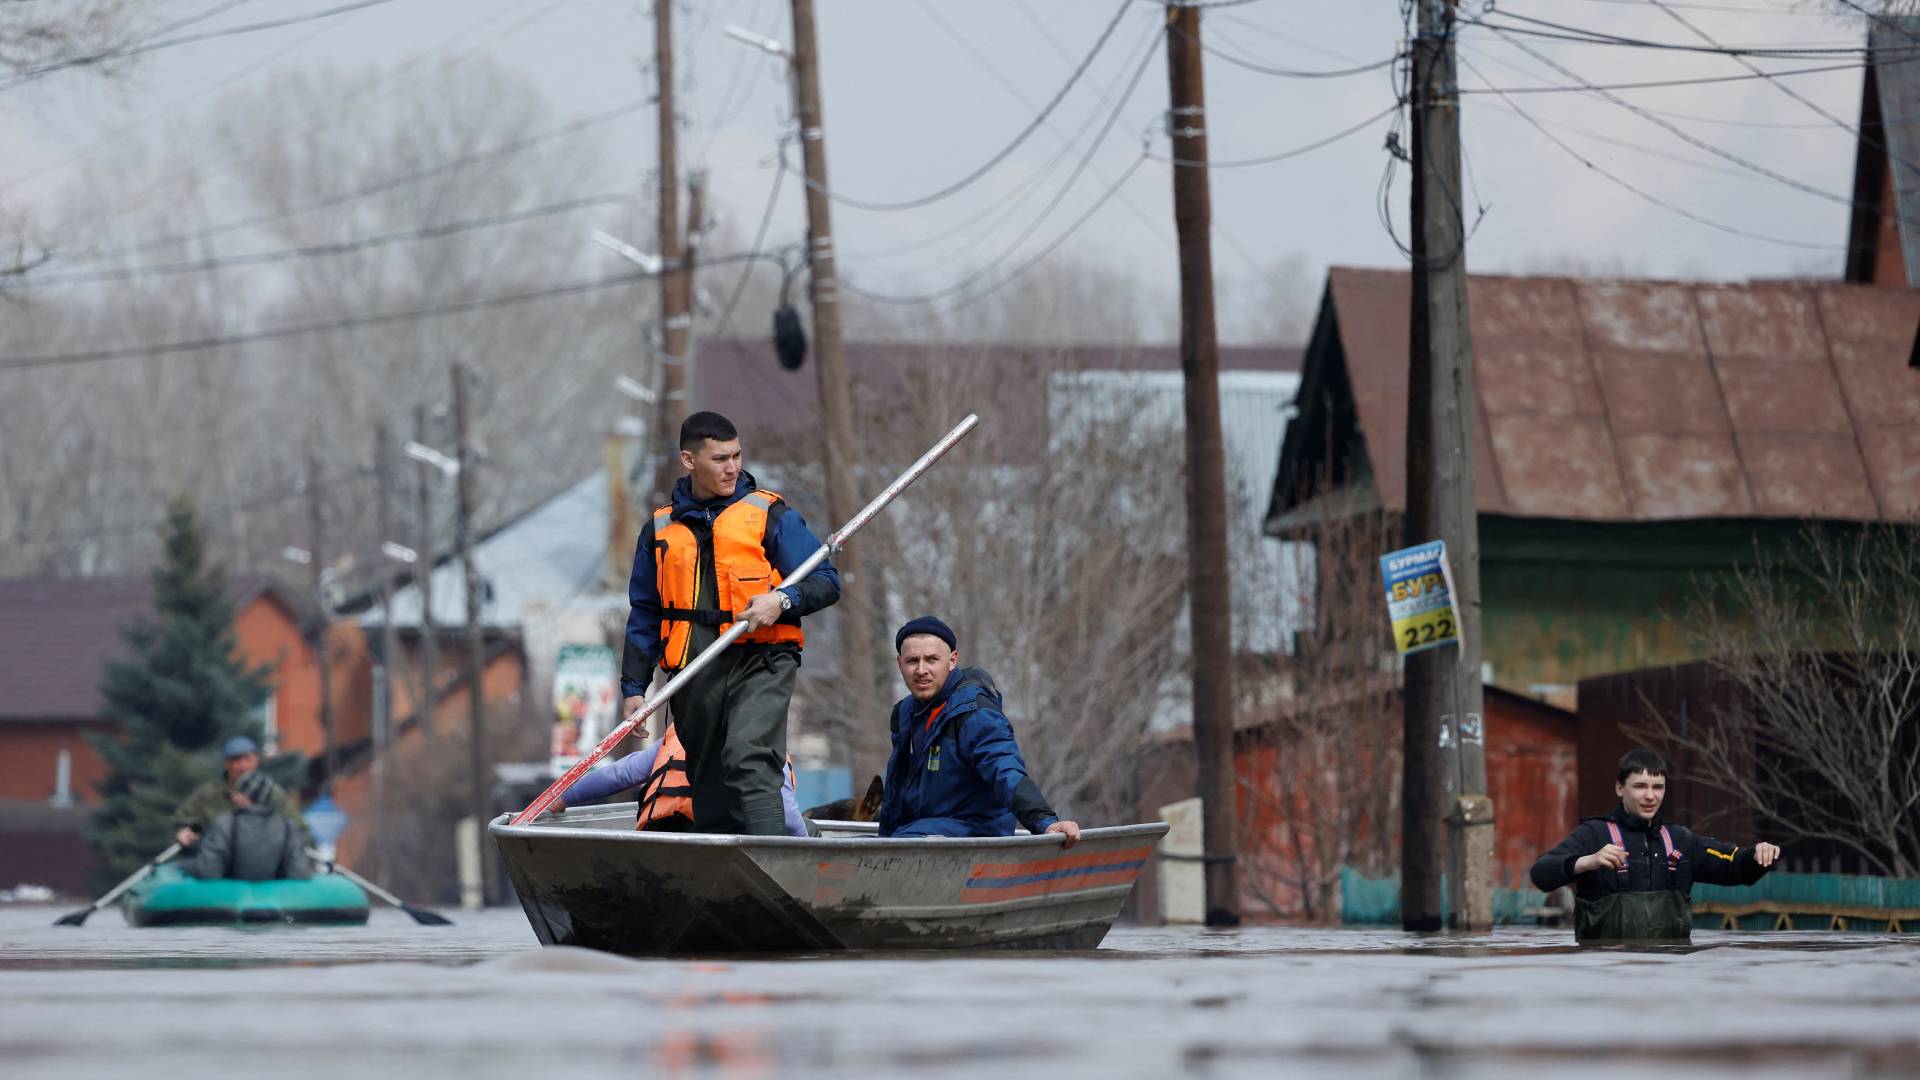 πλημμύρες σε ρωσία και καζακστάν: κάτω από το νερό ολόκληρες περιοχές – ανεβαίνει κι άλλο η στάθμη των ποταμών